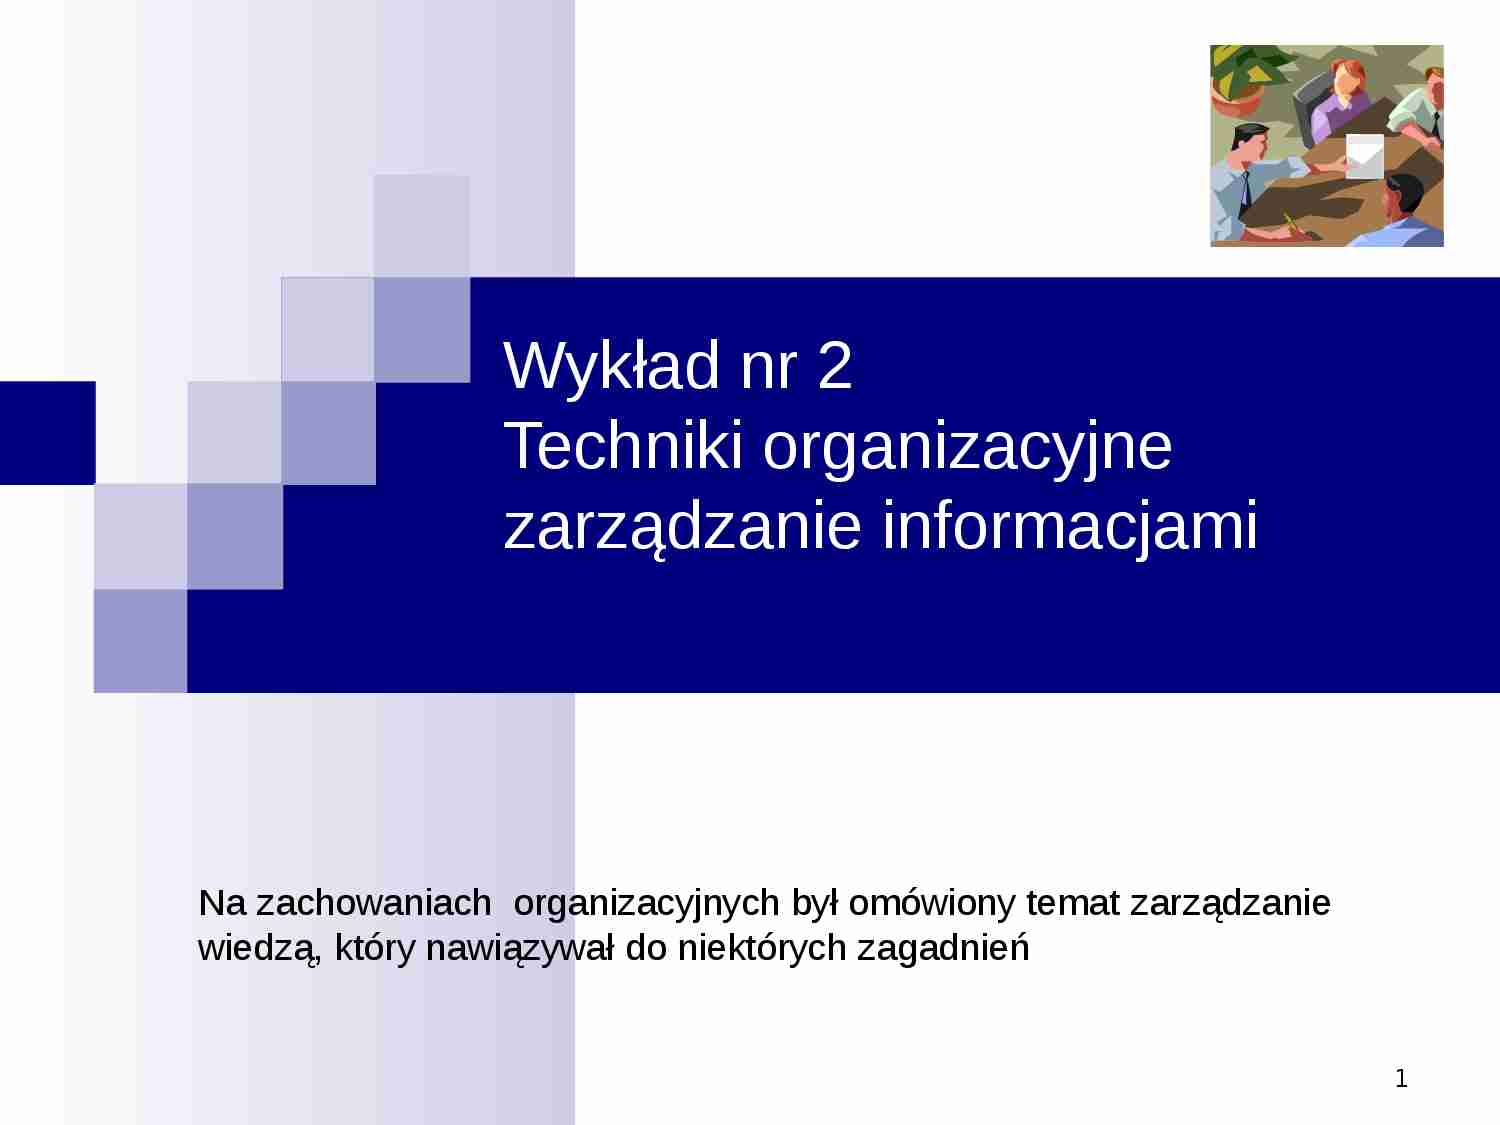 Zarządzanie informacjami - prezentacja - strona 1